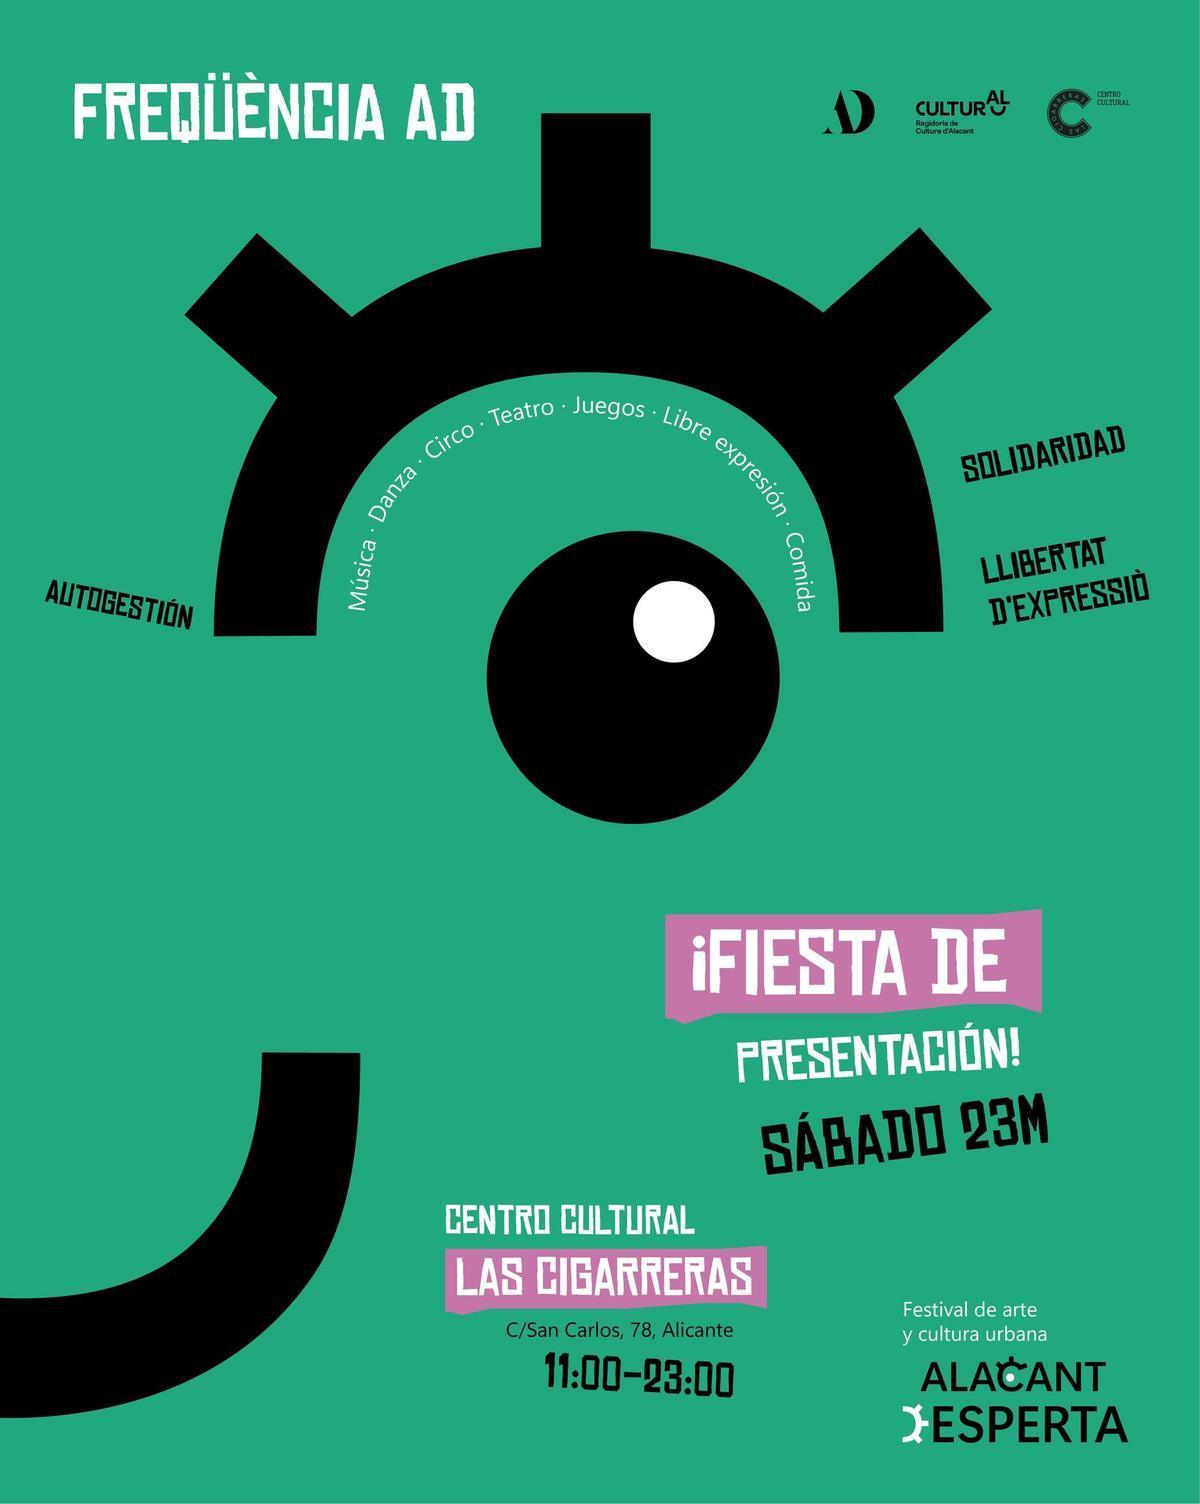 Cartel promocional de la fiesta de presentación de Alacant Desperta